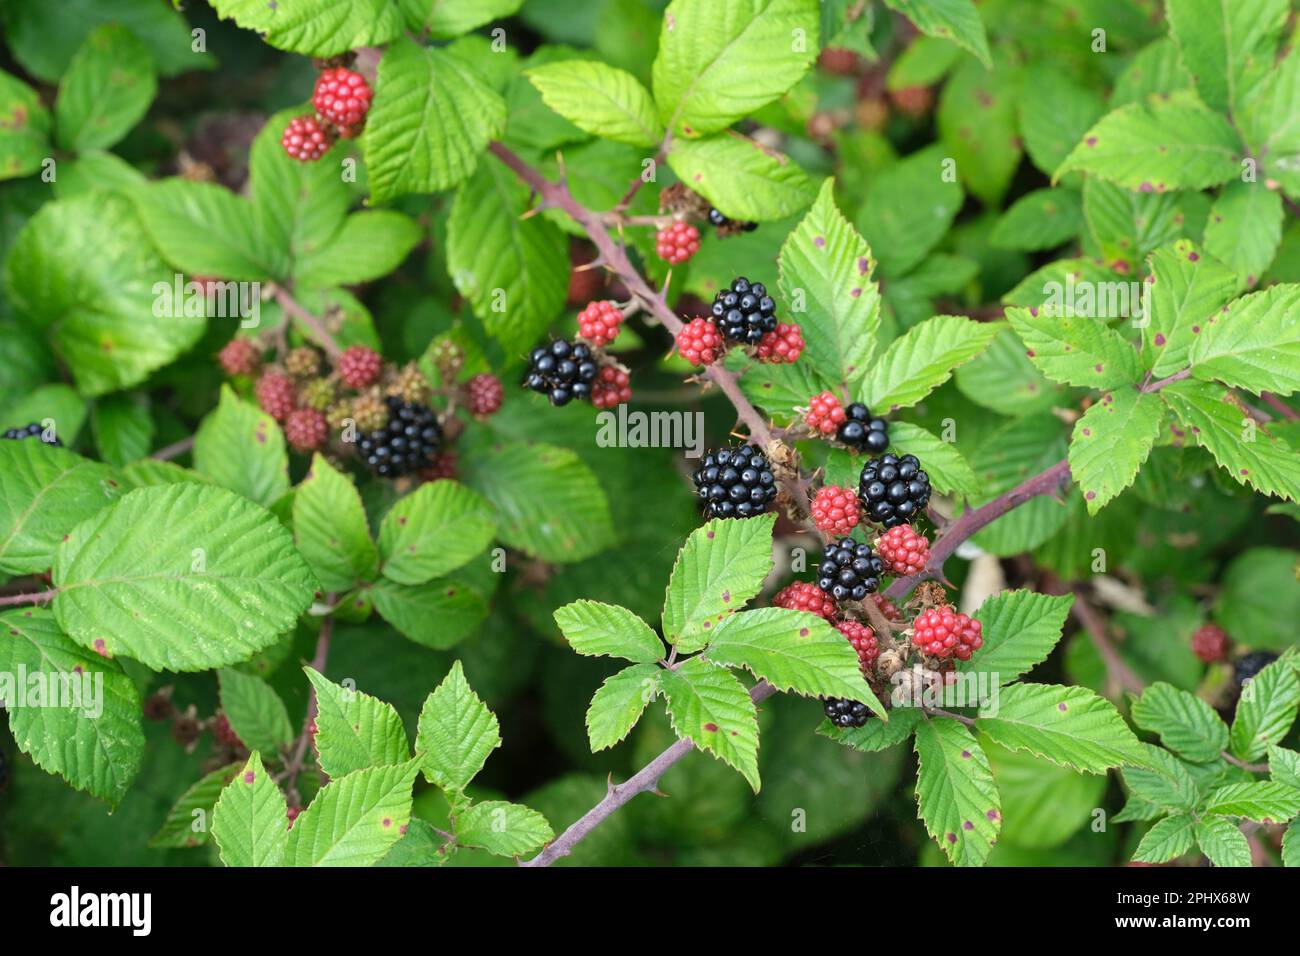 Rubus frutticosus, mora, frutta matura, commestibile che cresce sul cespuglio Foto Stock